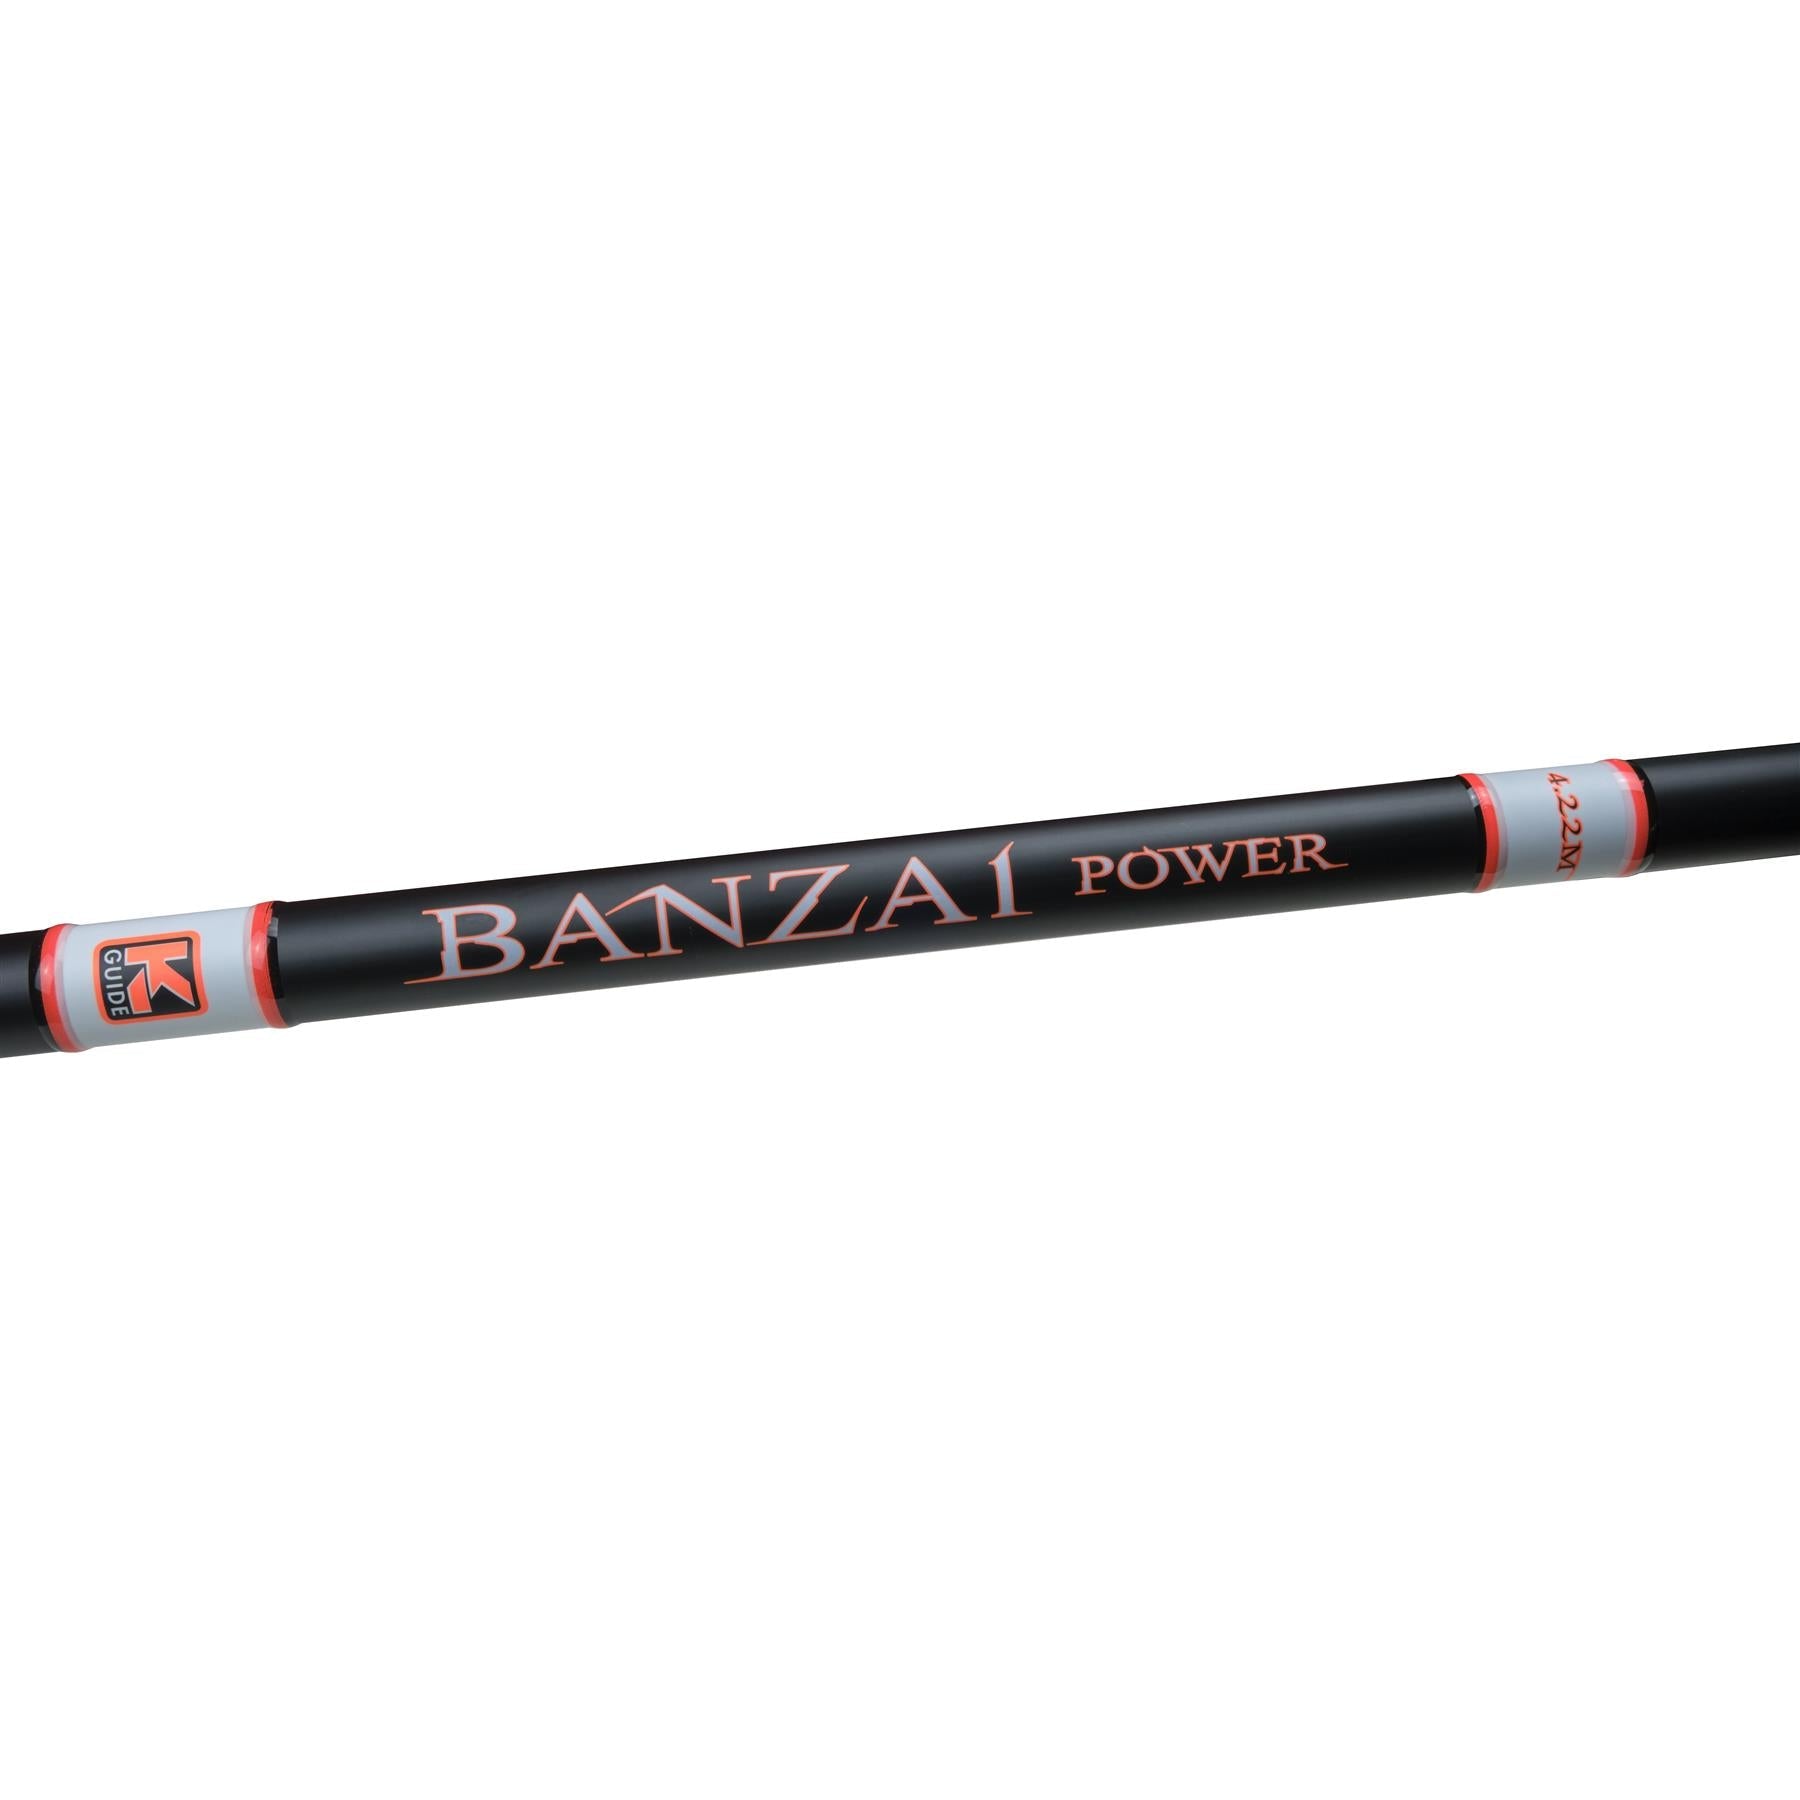 TronixPro Banzai Power, 13' 10" 140-225g